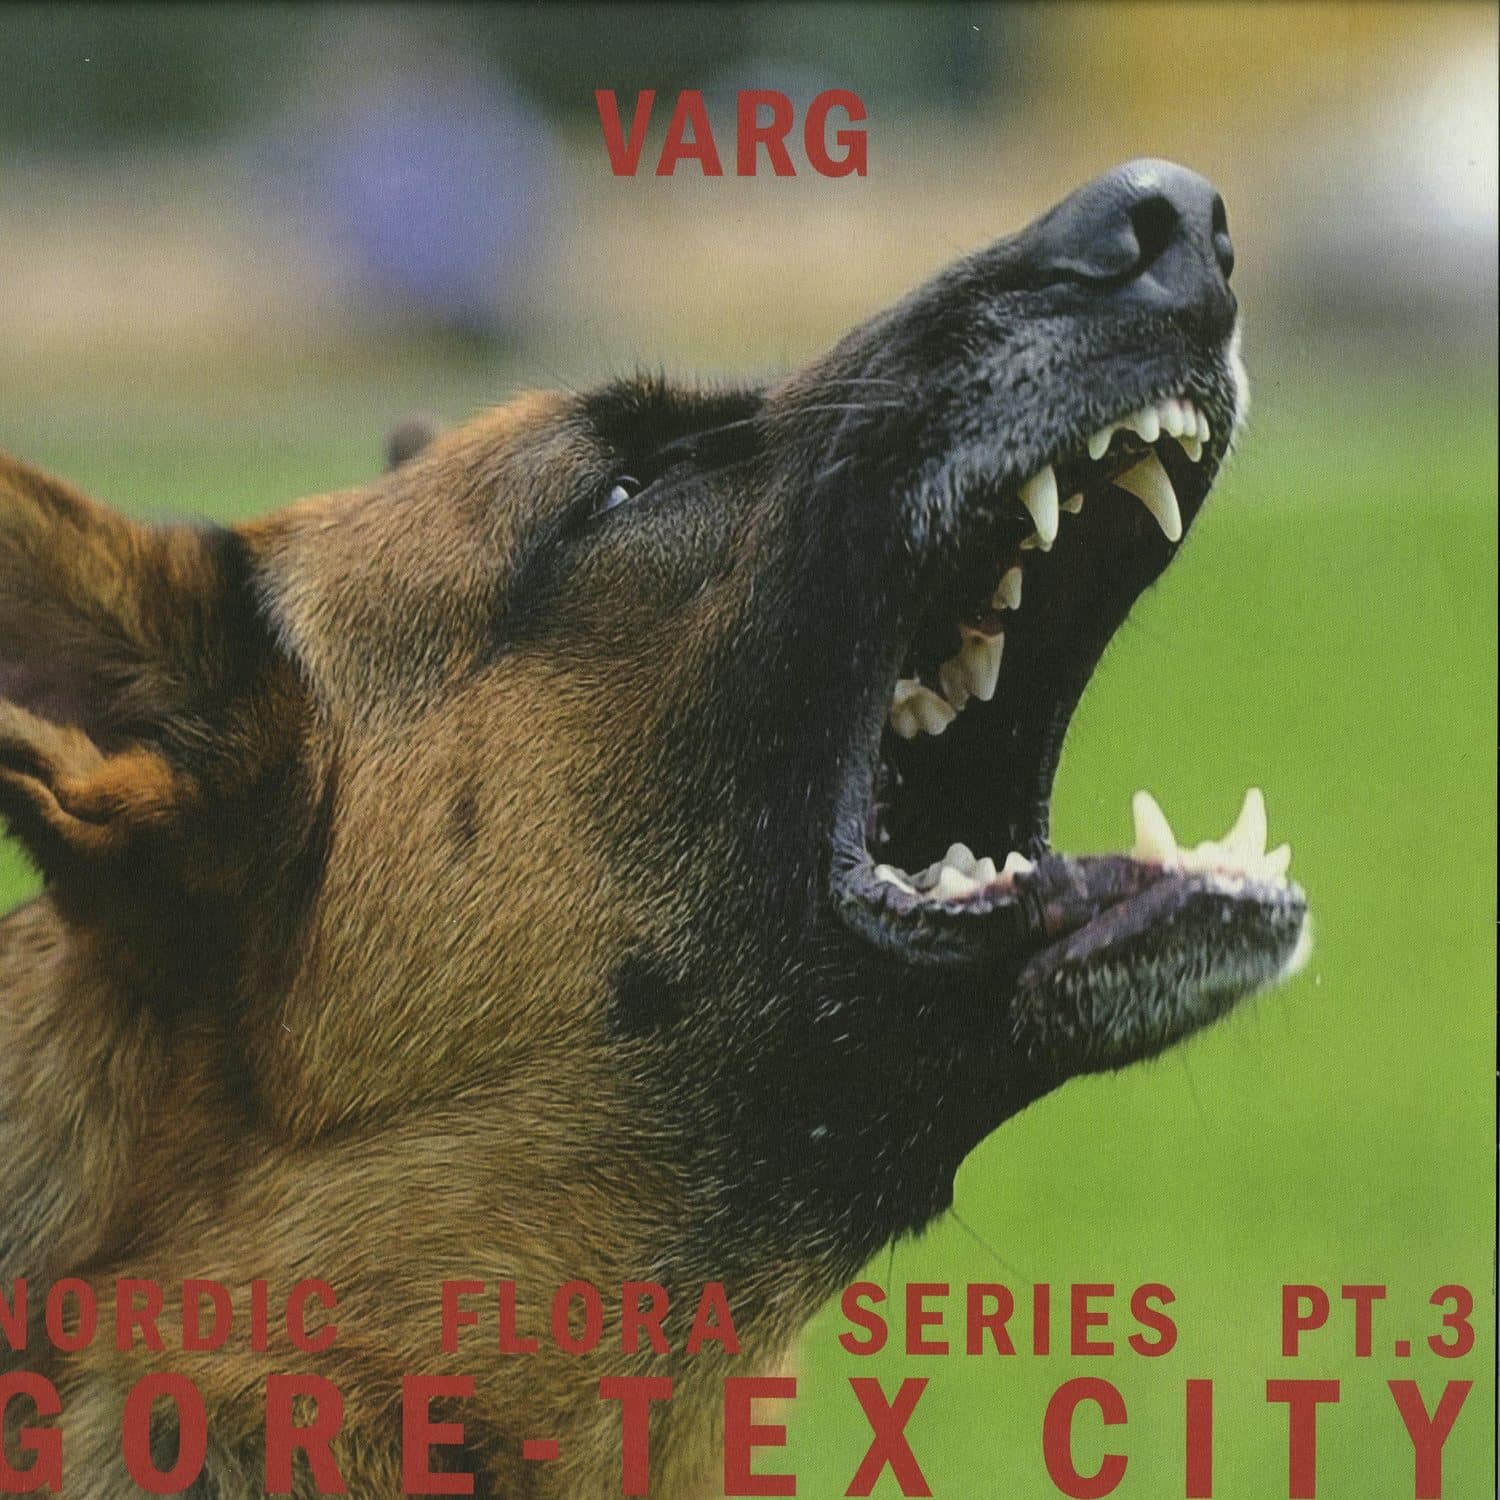 Varg - NORDIC FLORA SERIES PT. 3: GORETEX CITY 